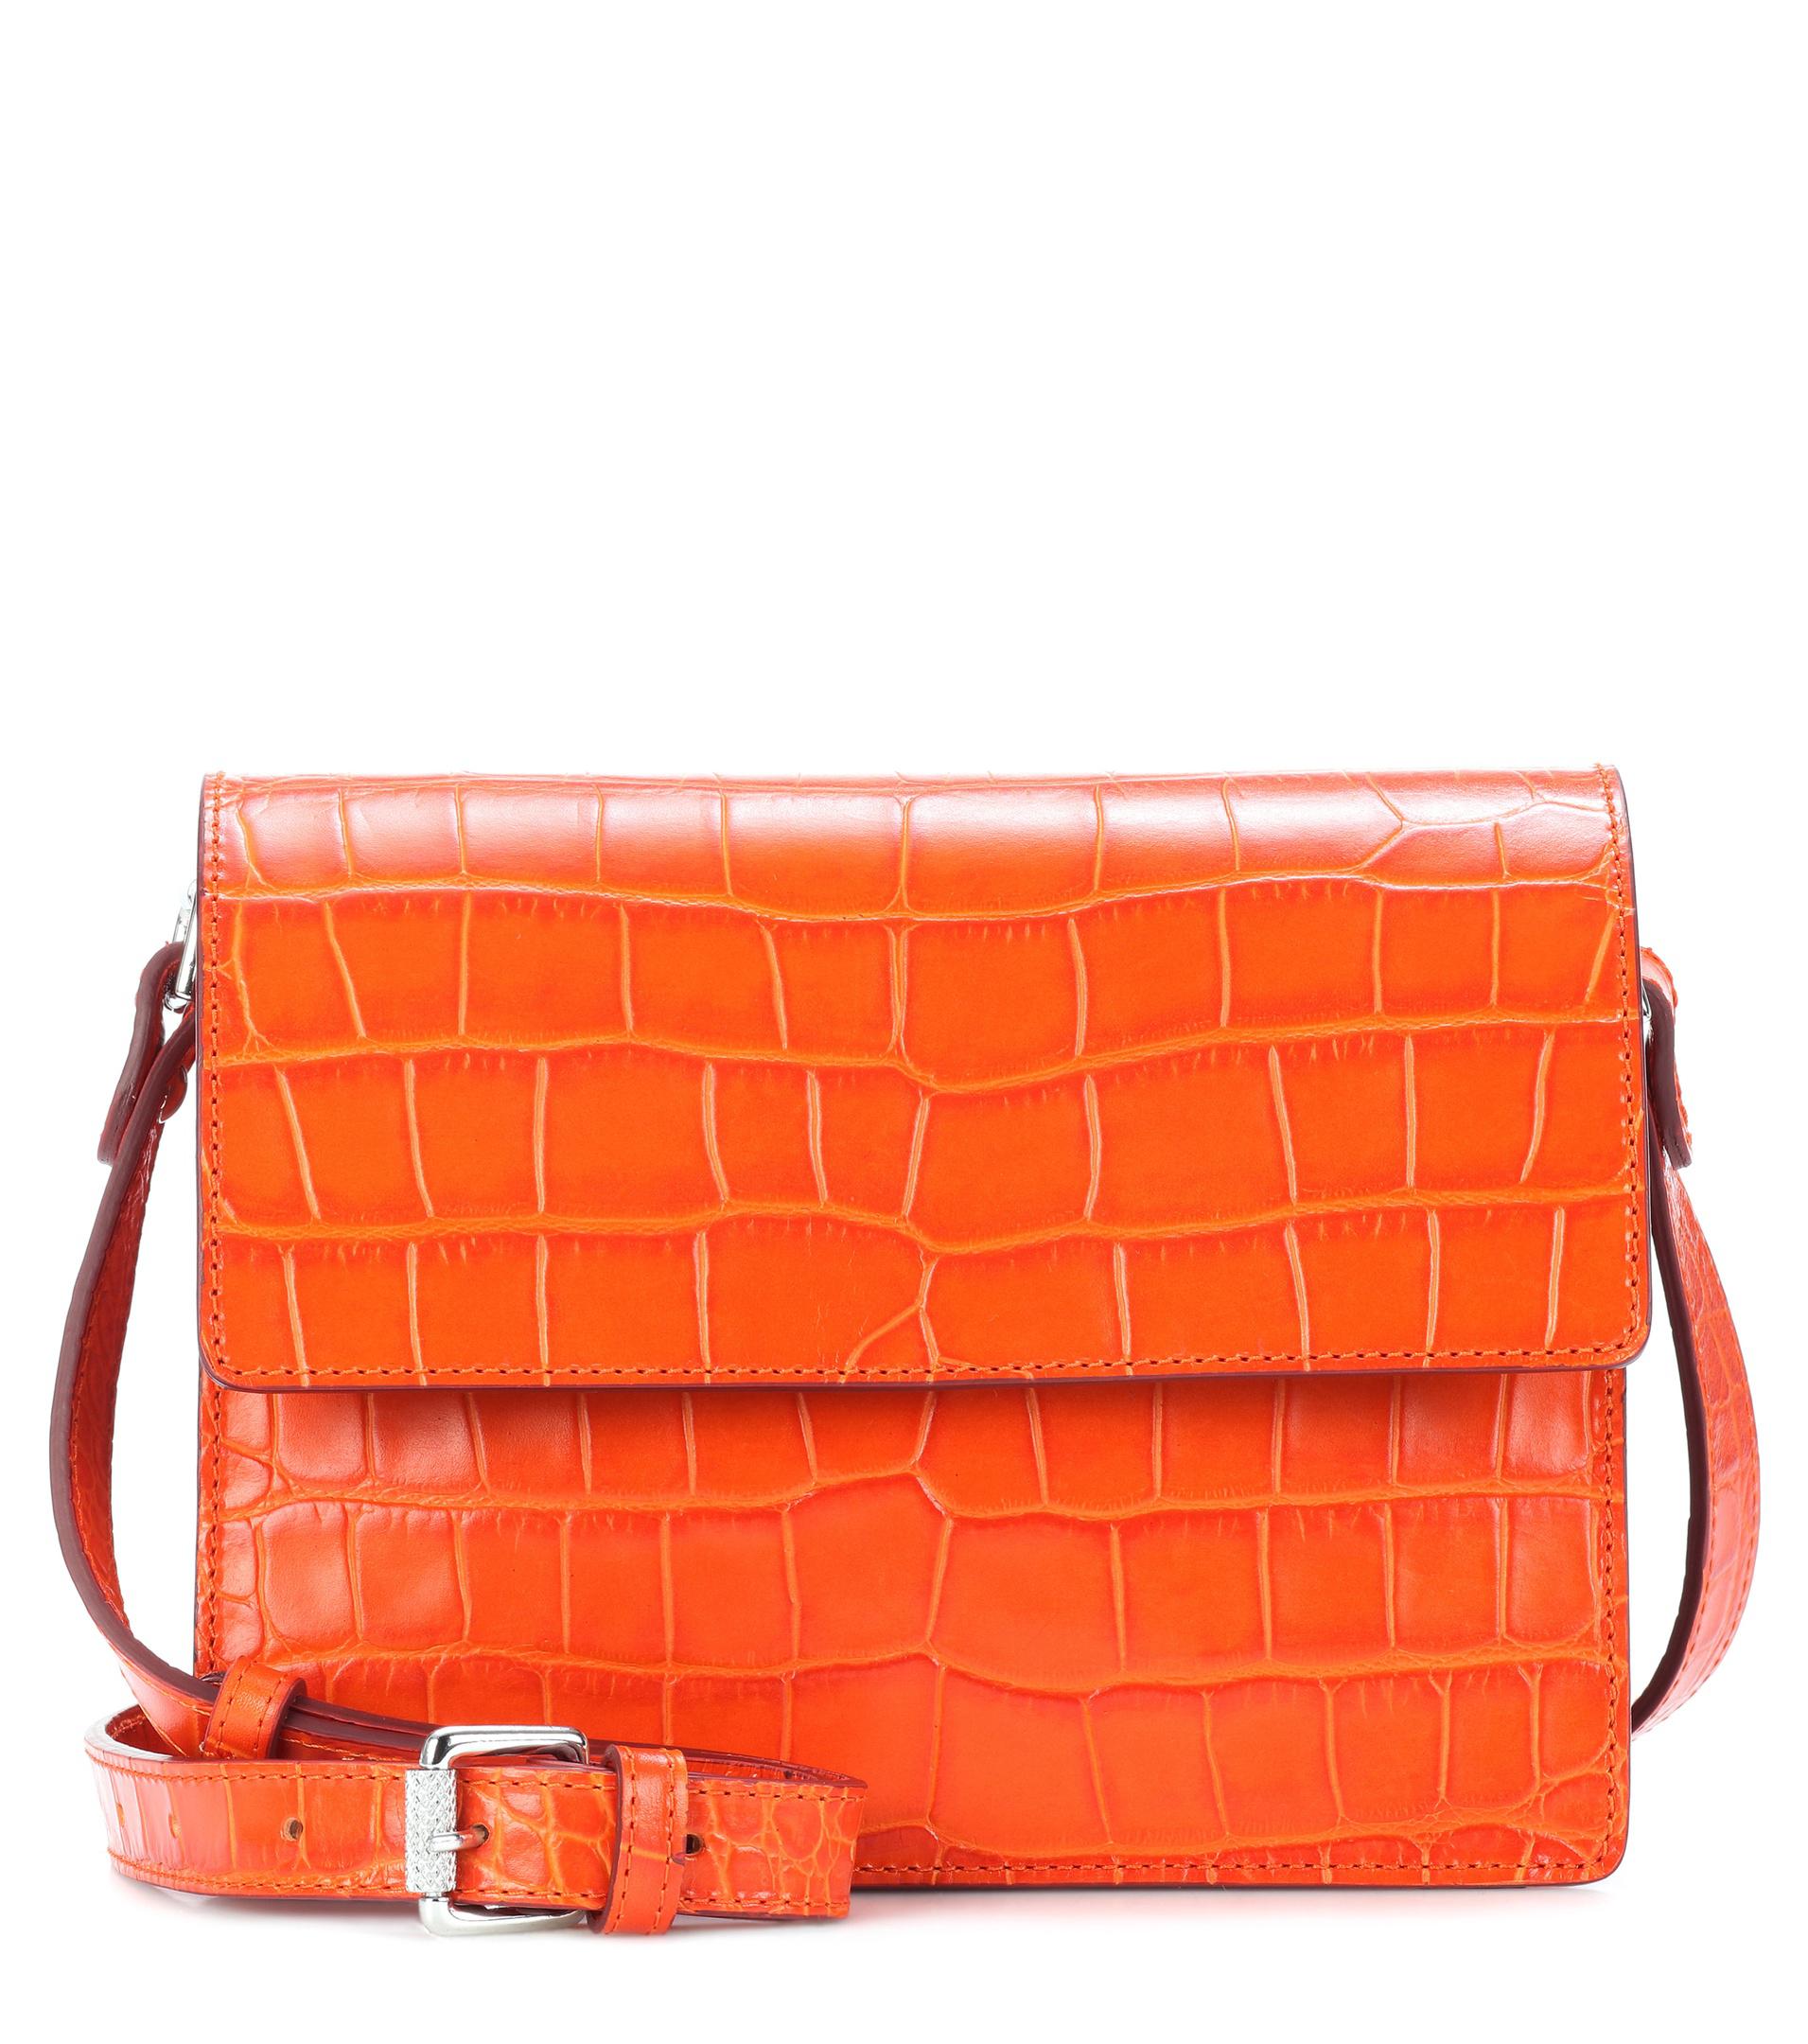 Ganni Embossed Leather Shoulder Bag in Orange - Lyst